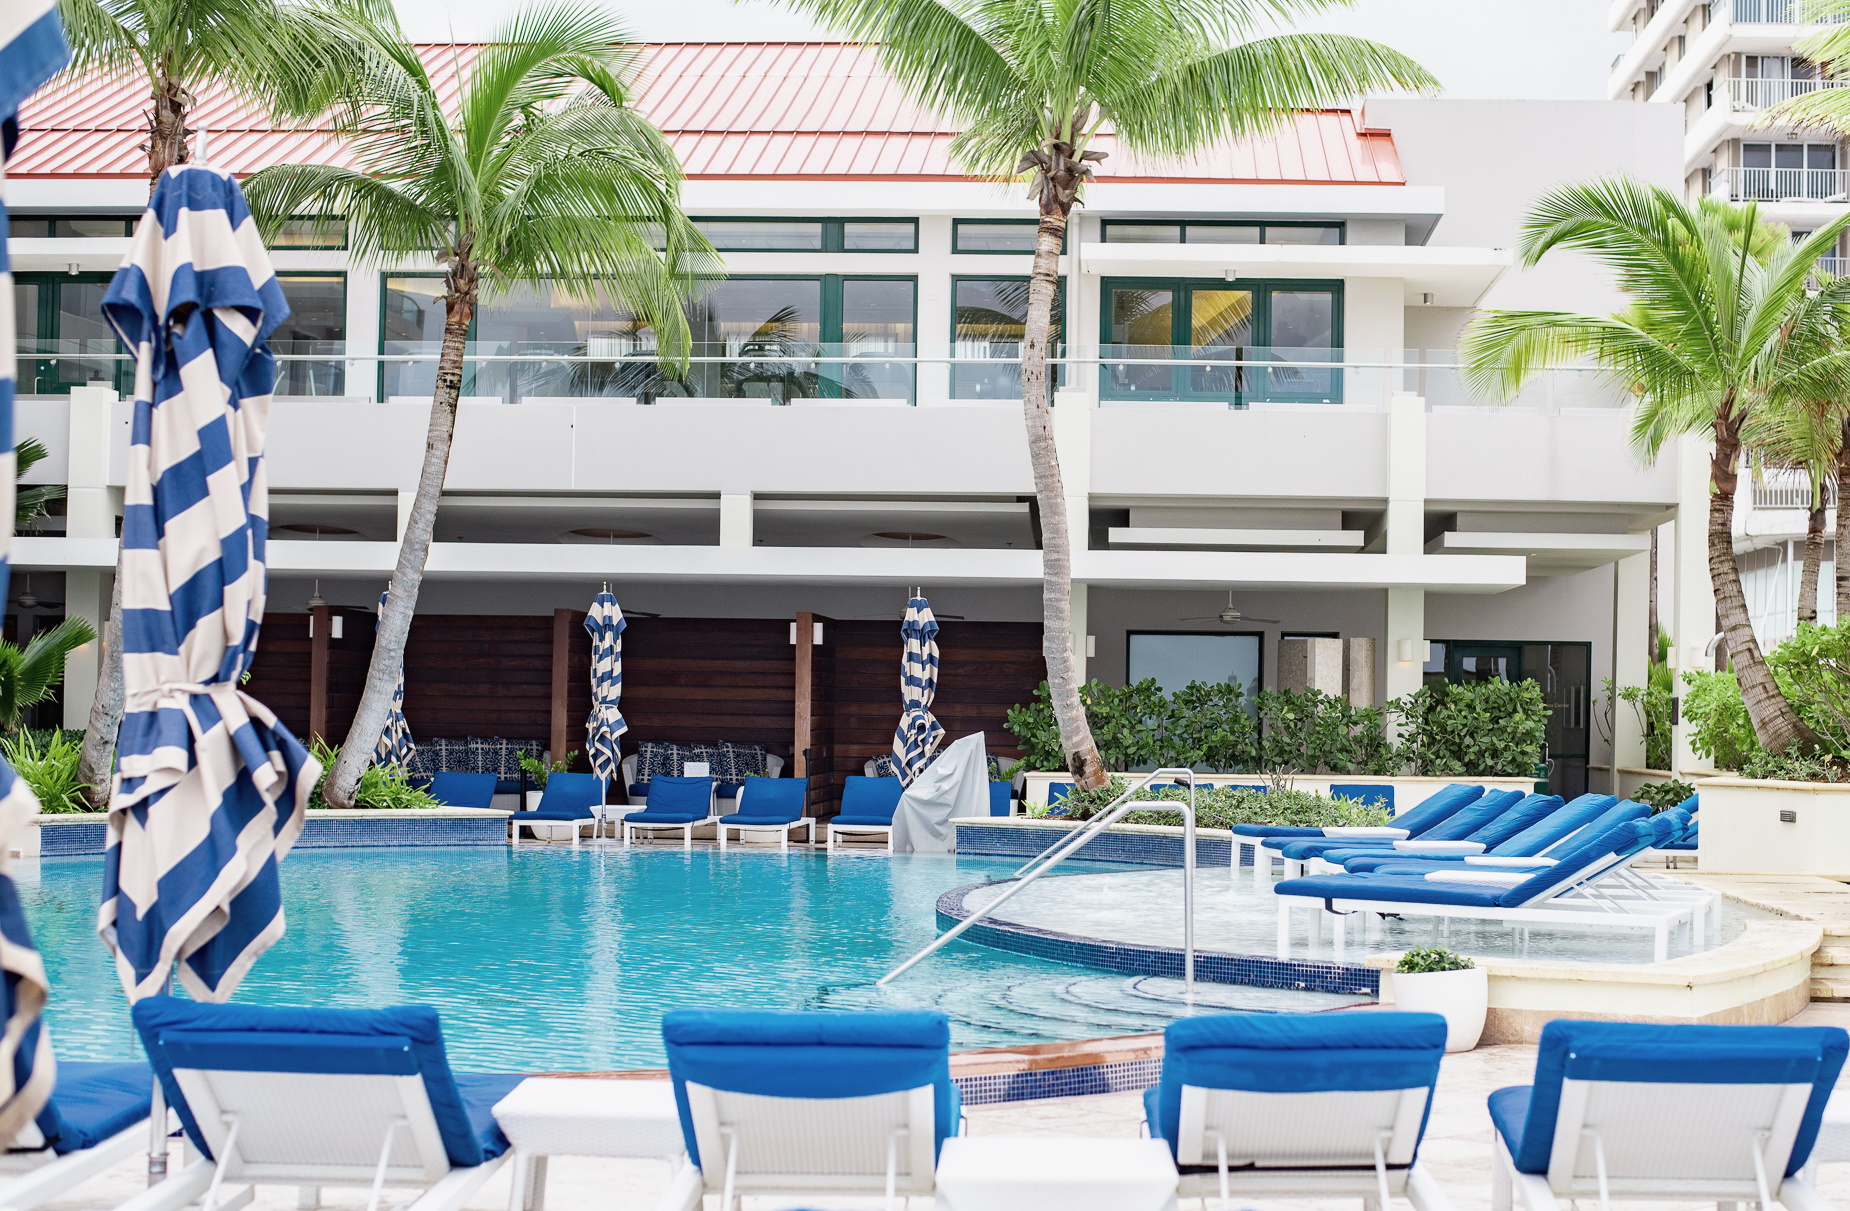 El Condado Vanderbilt Hotel, Luxury Hotels in Puerto Rico, Best places to stay in Puerto Rico 